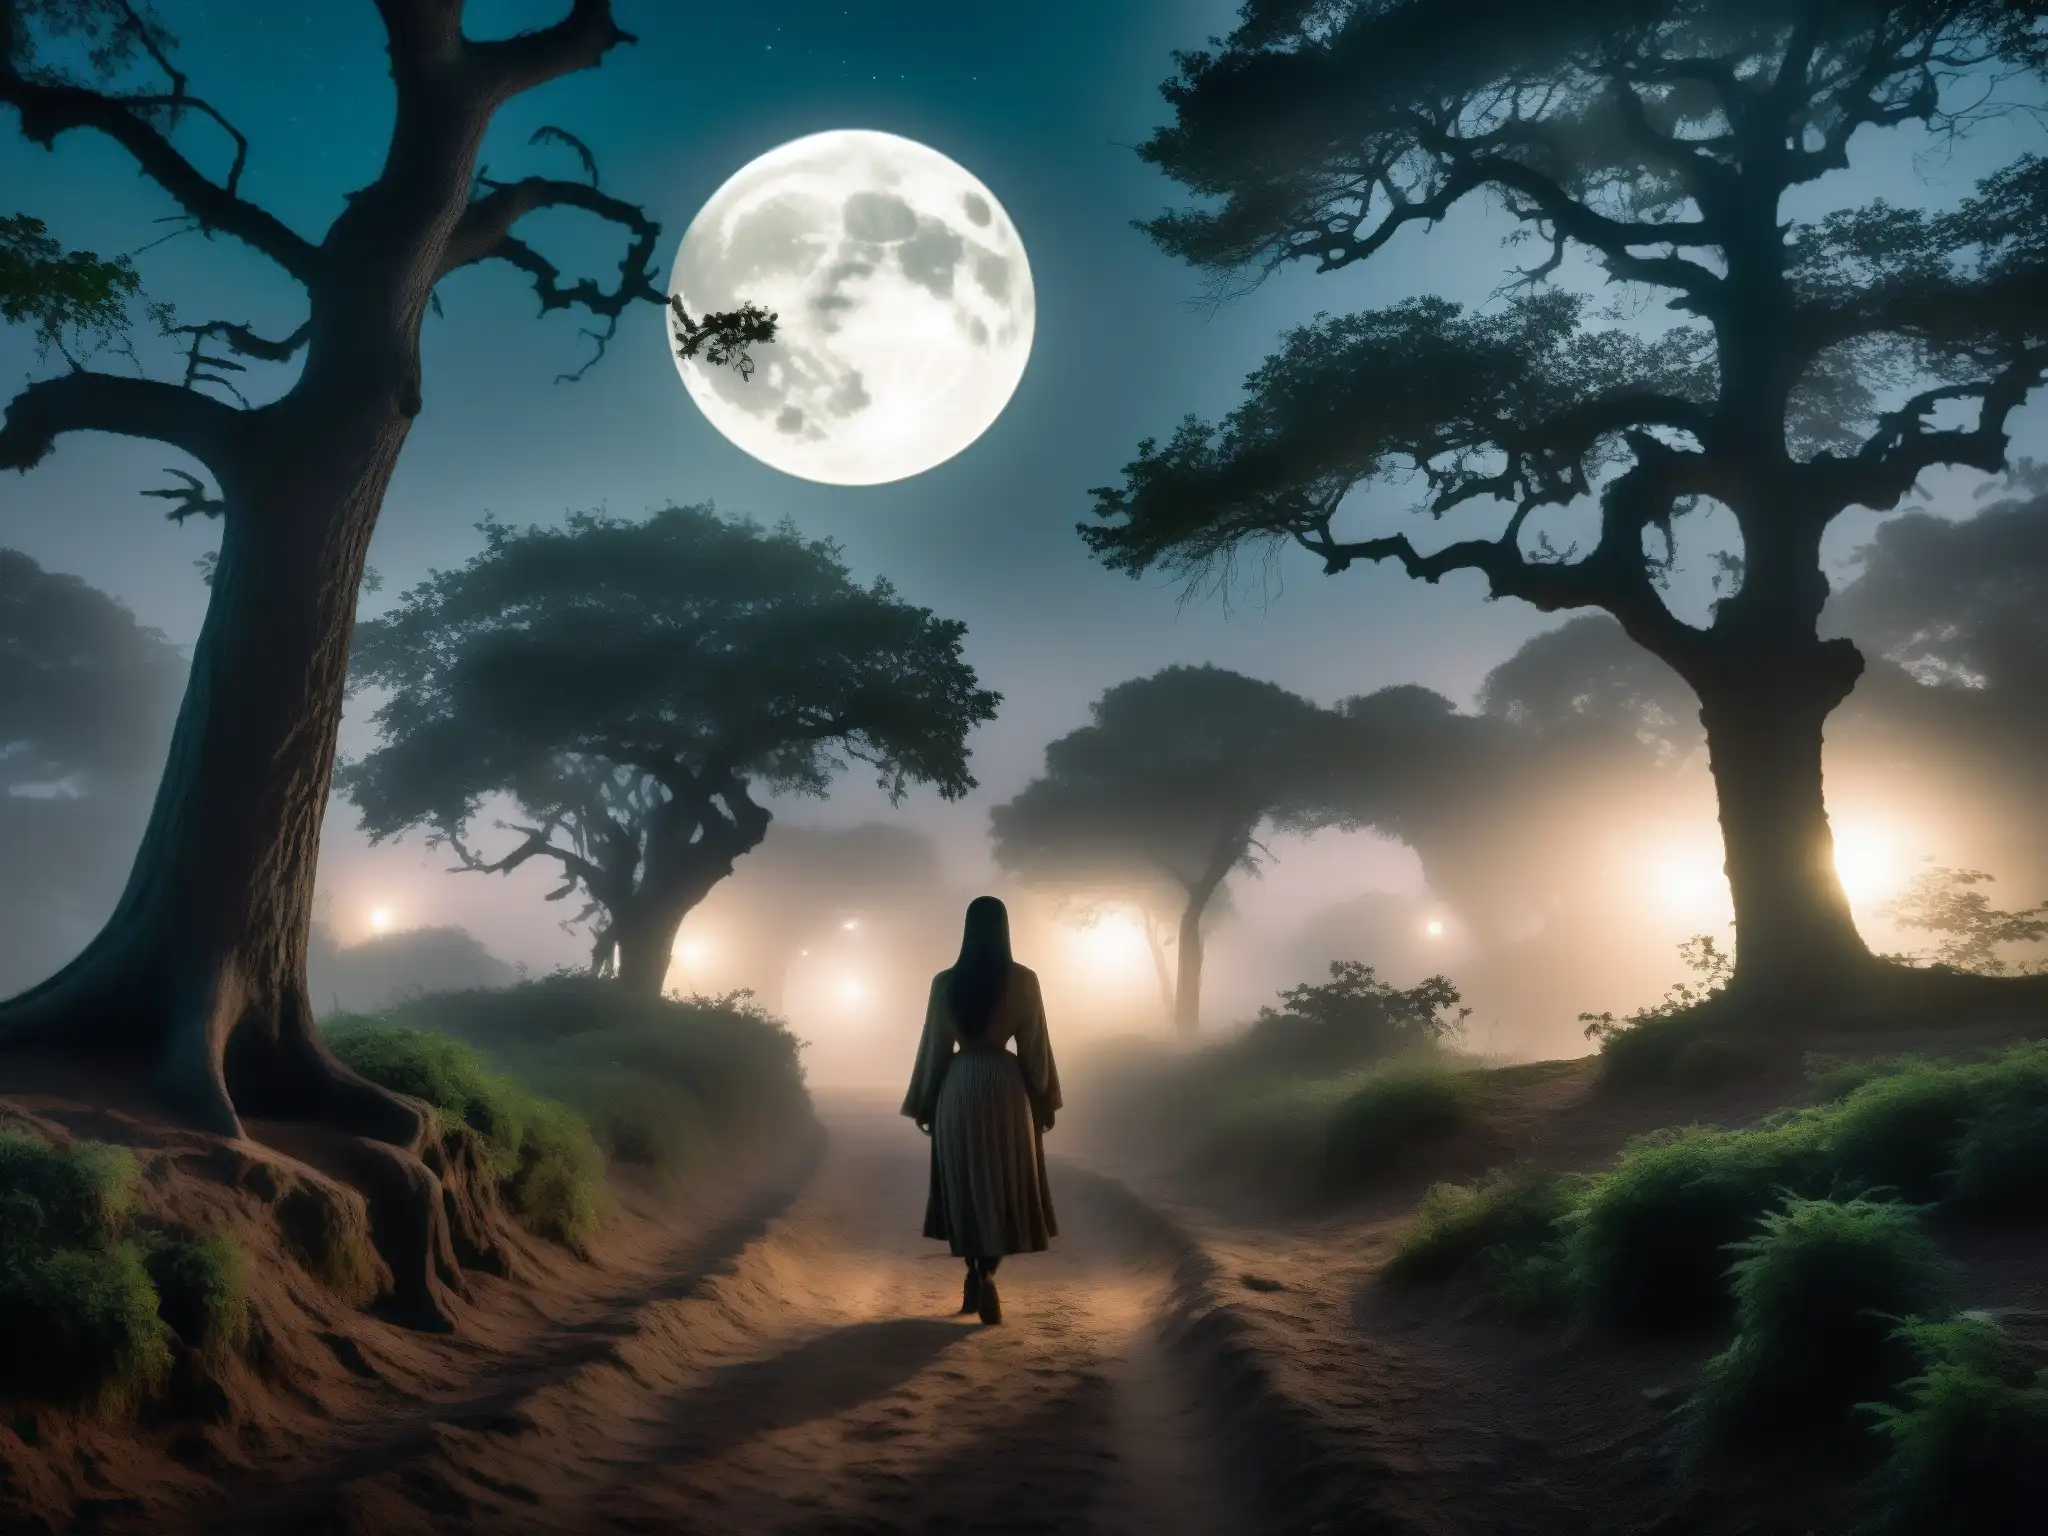 Espeluznante sendero entre árboles retorcidos, con un espíritu acechador en Sanjay Van, envuelto en niebla y misterio bajo la luz de la luna